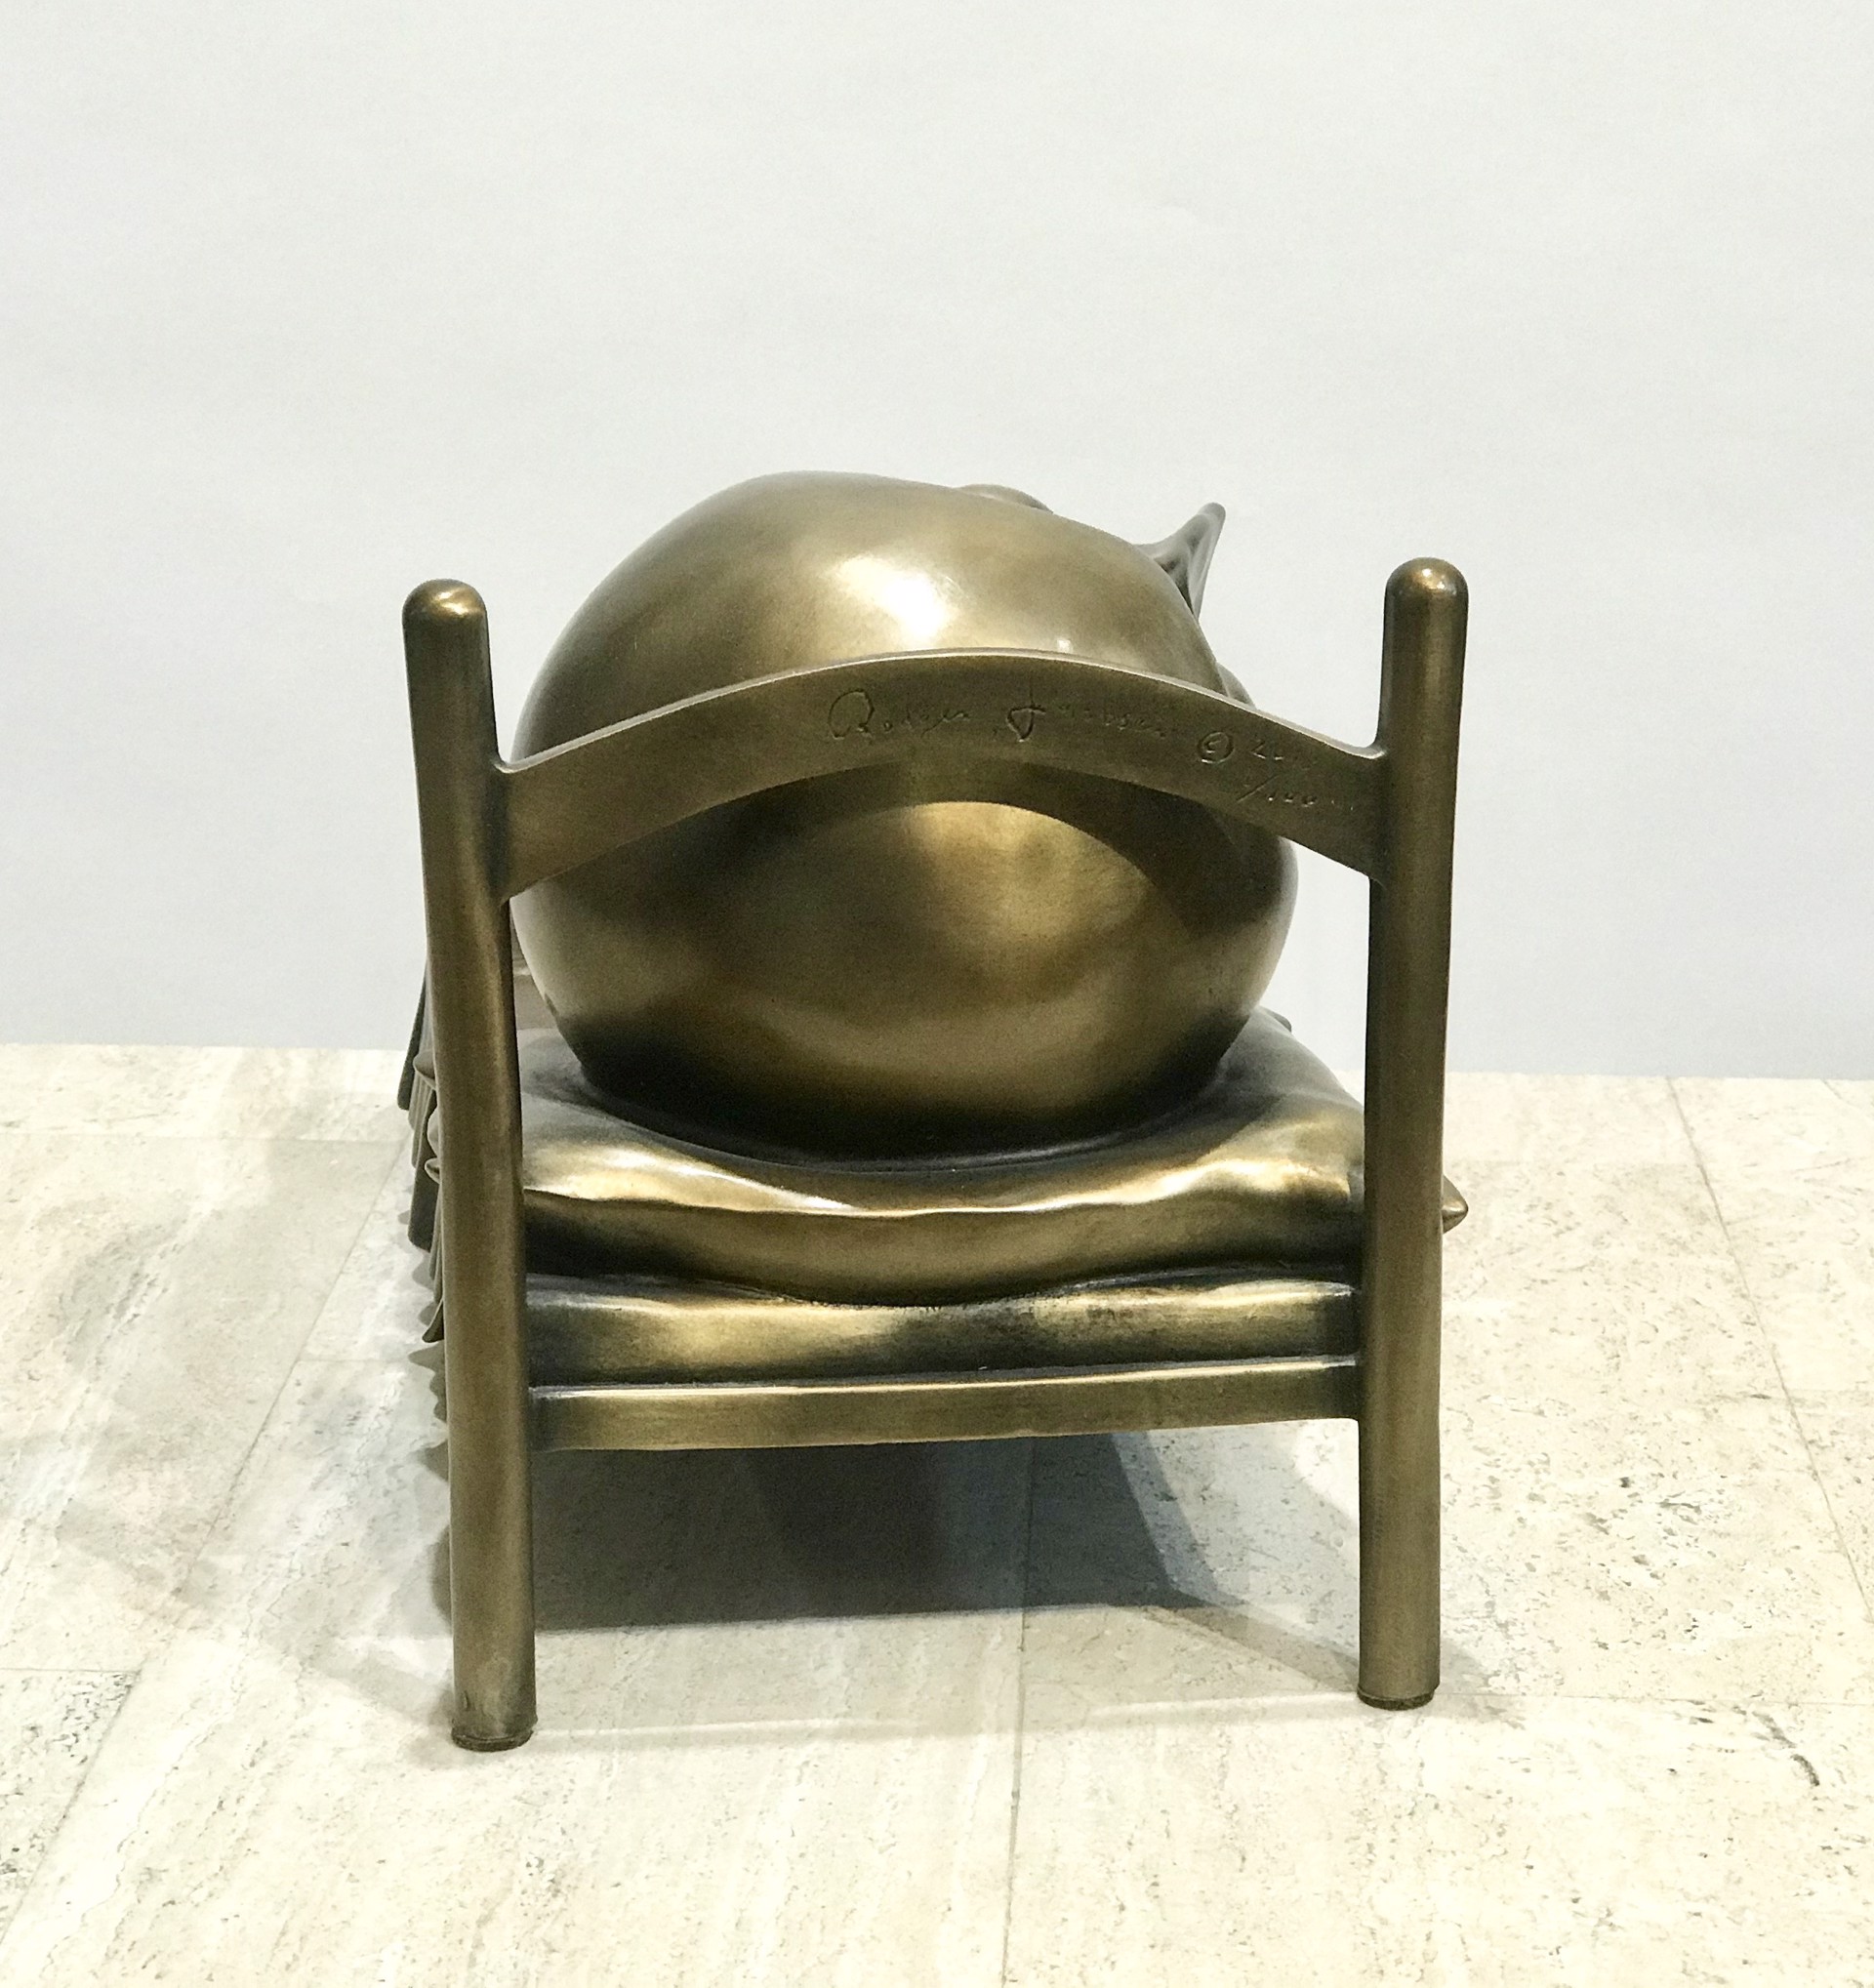 Slumber (bronze) by Rodger Jacobsen